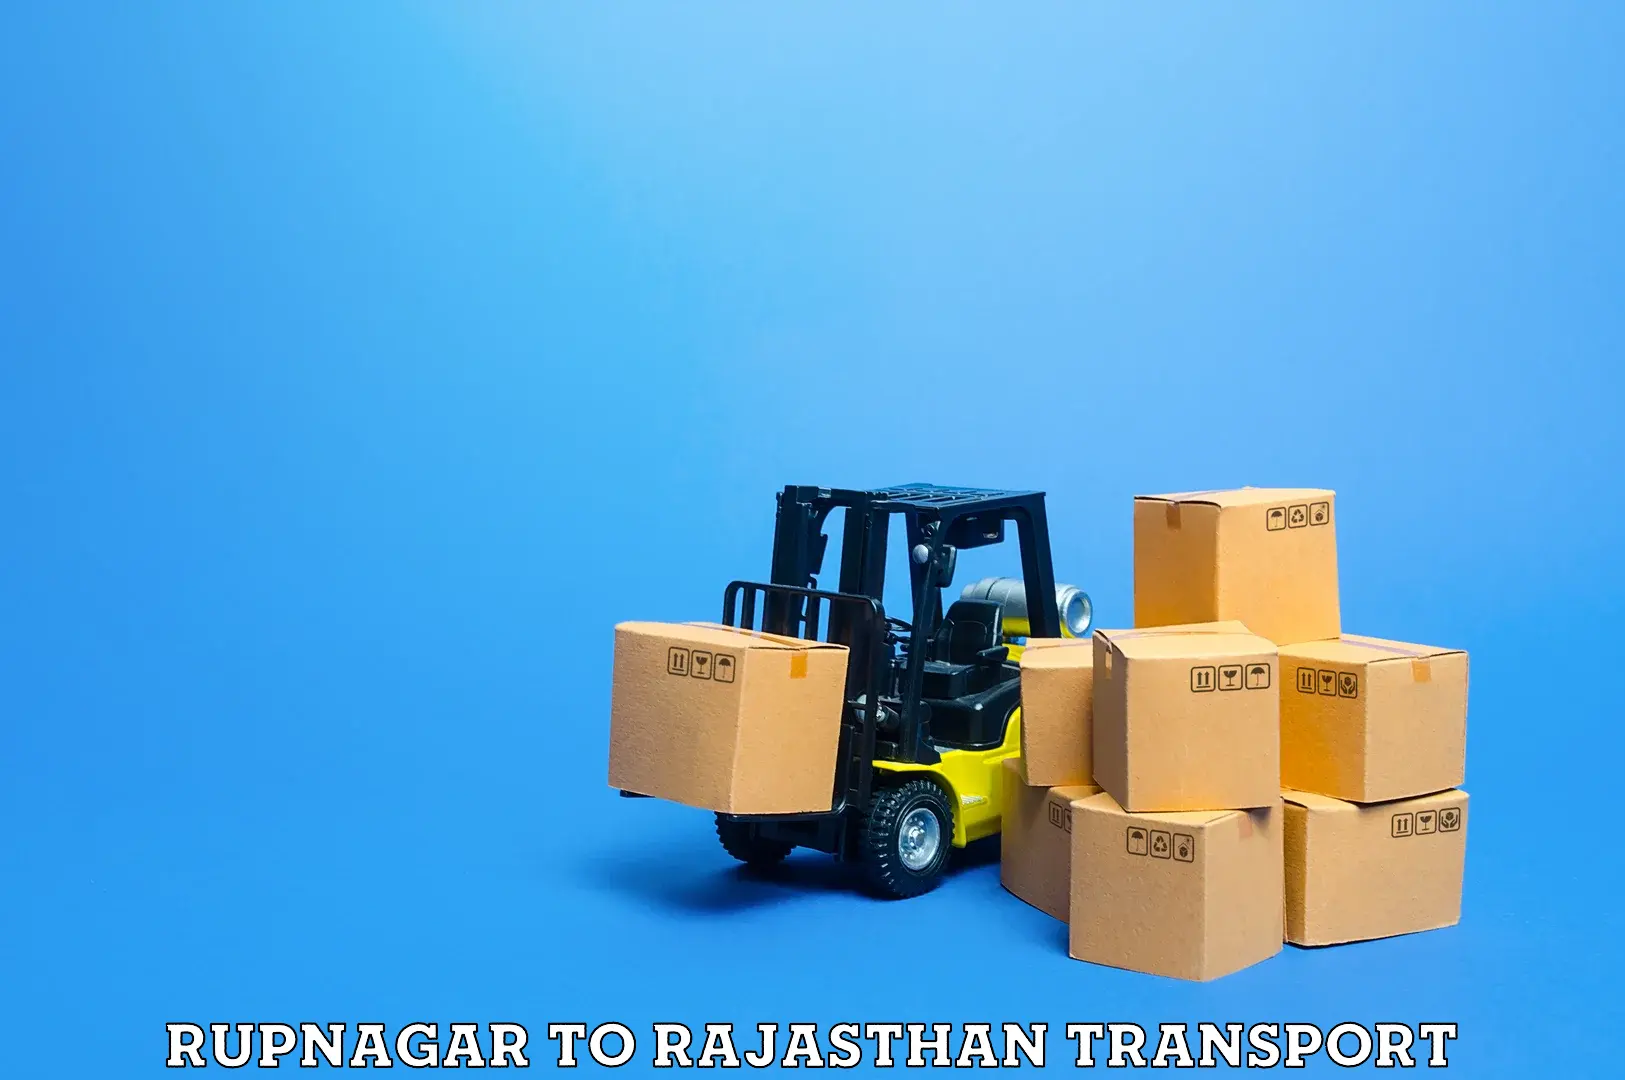 Daily parcel service transport Rupnagar to Danta Ramgarh